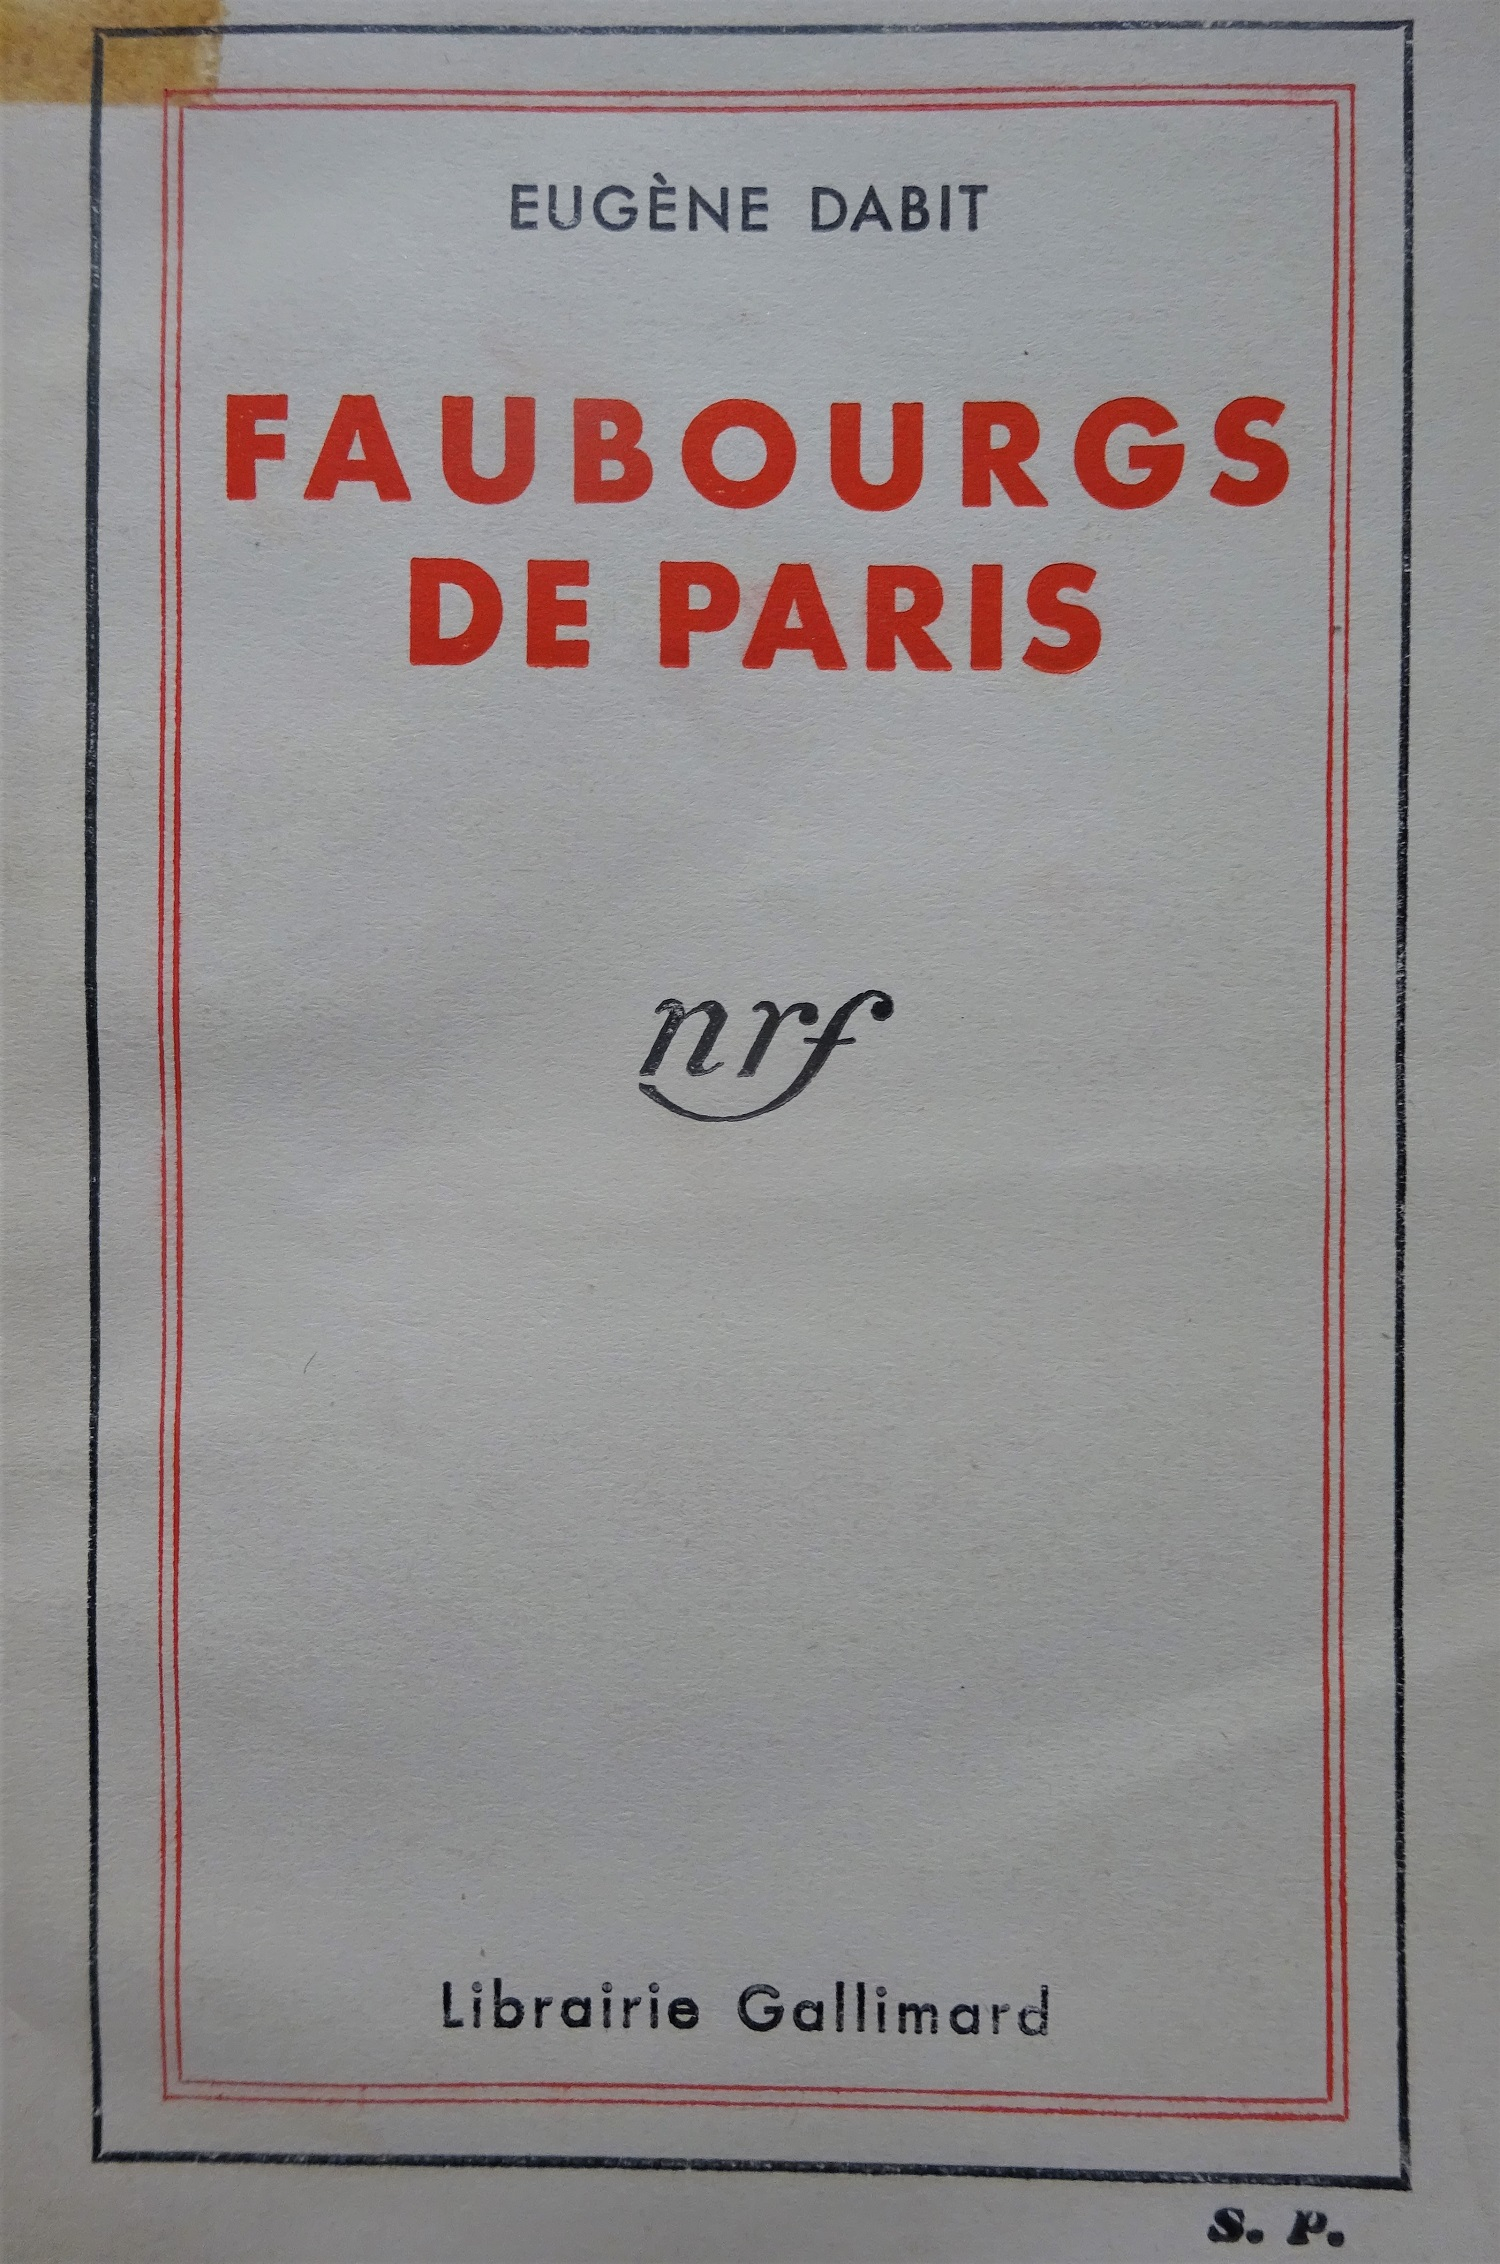 Faubourgs de Paris 1933